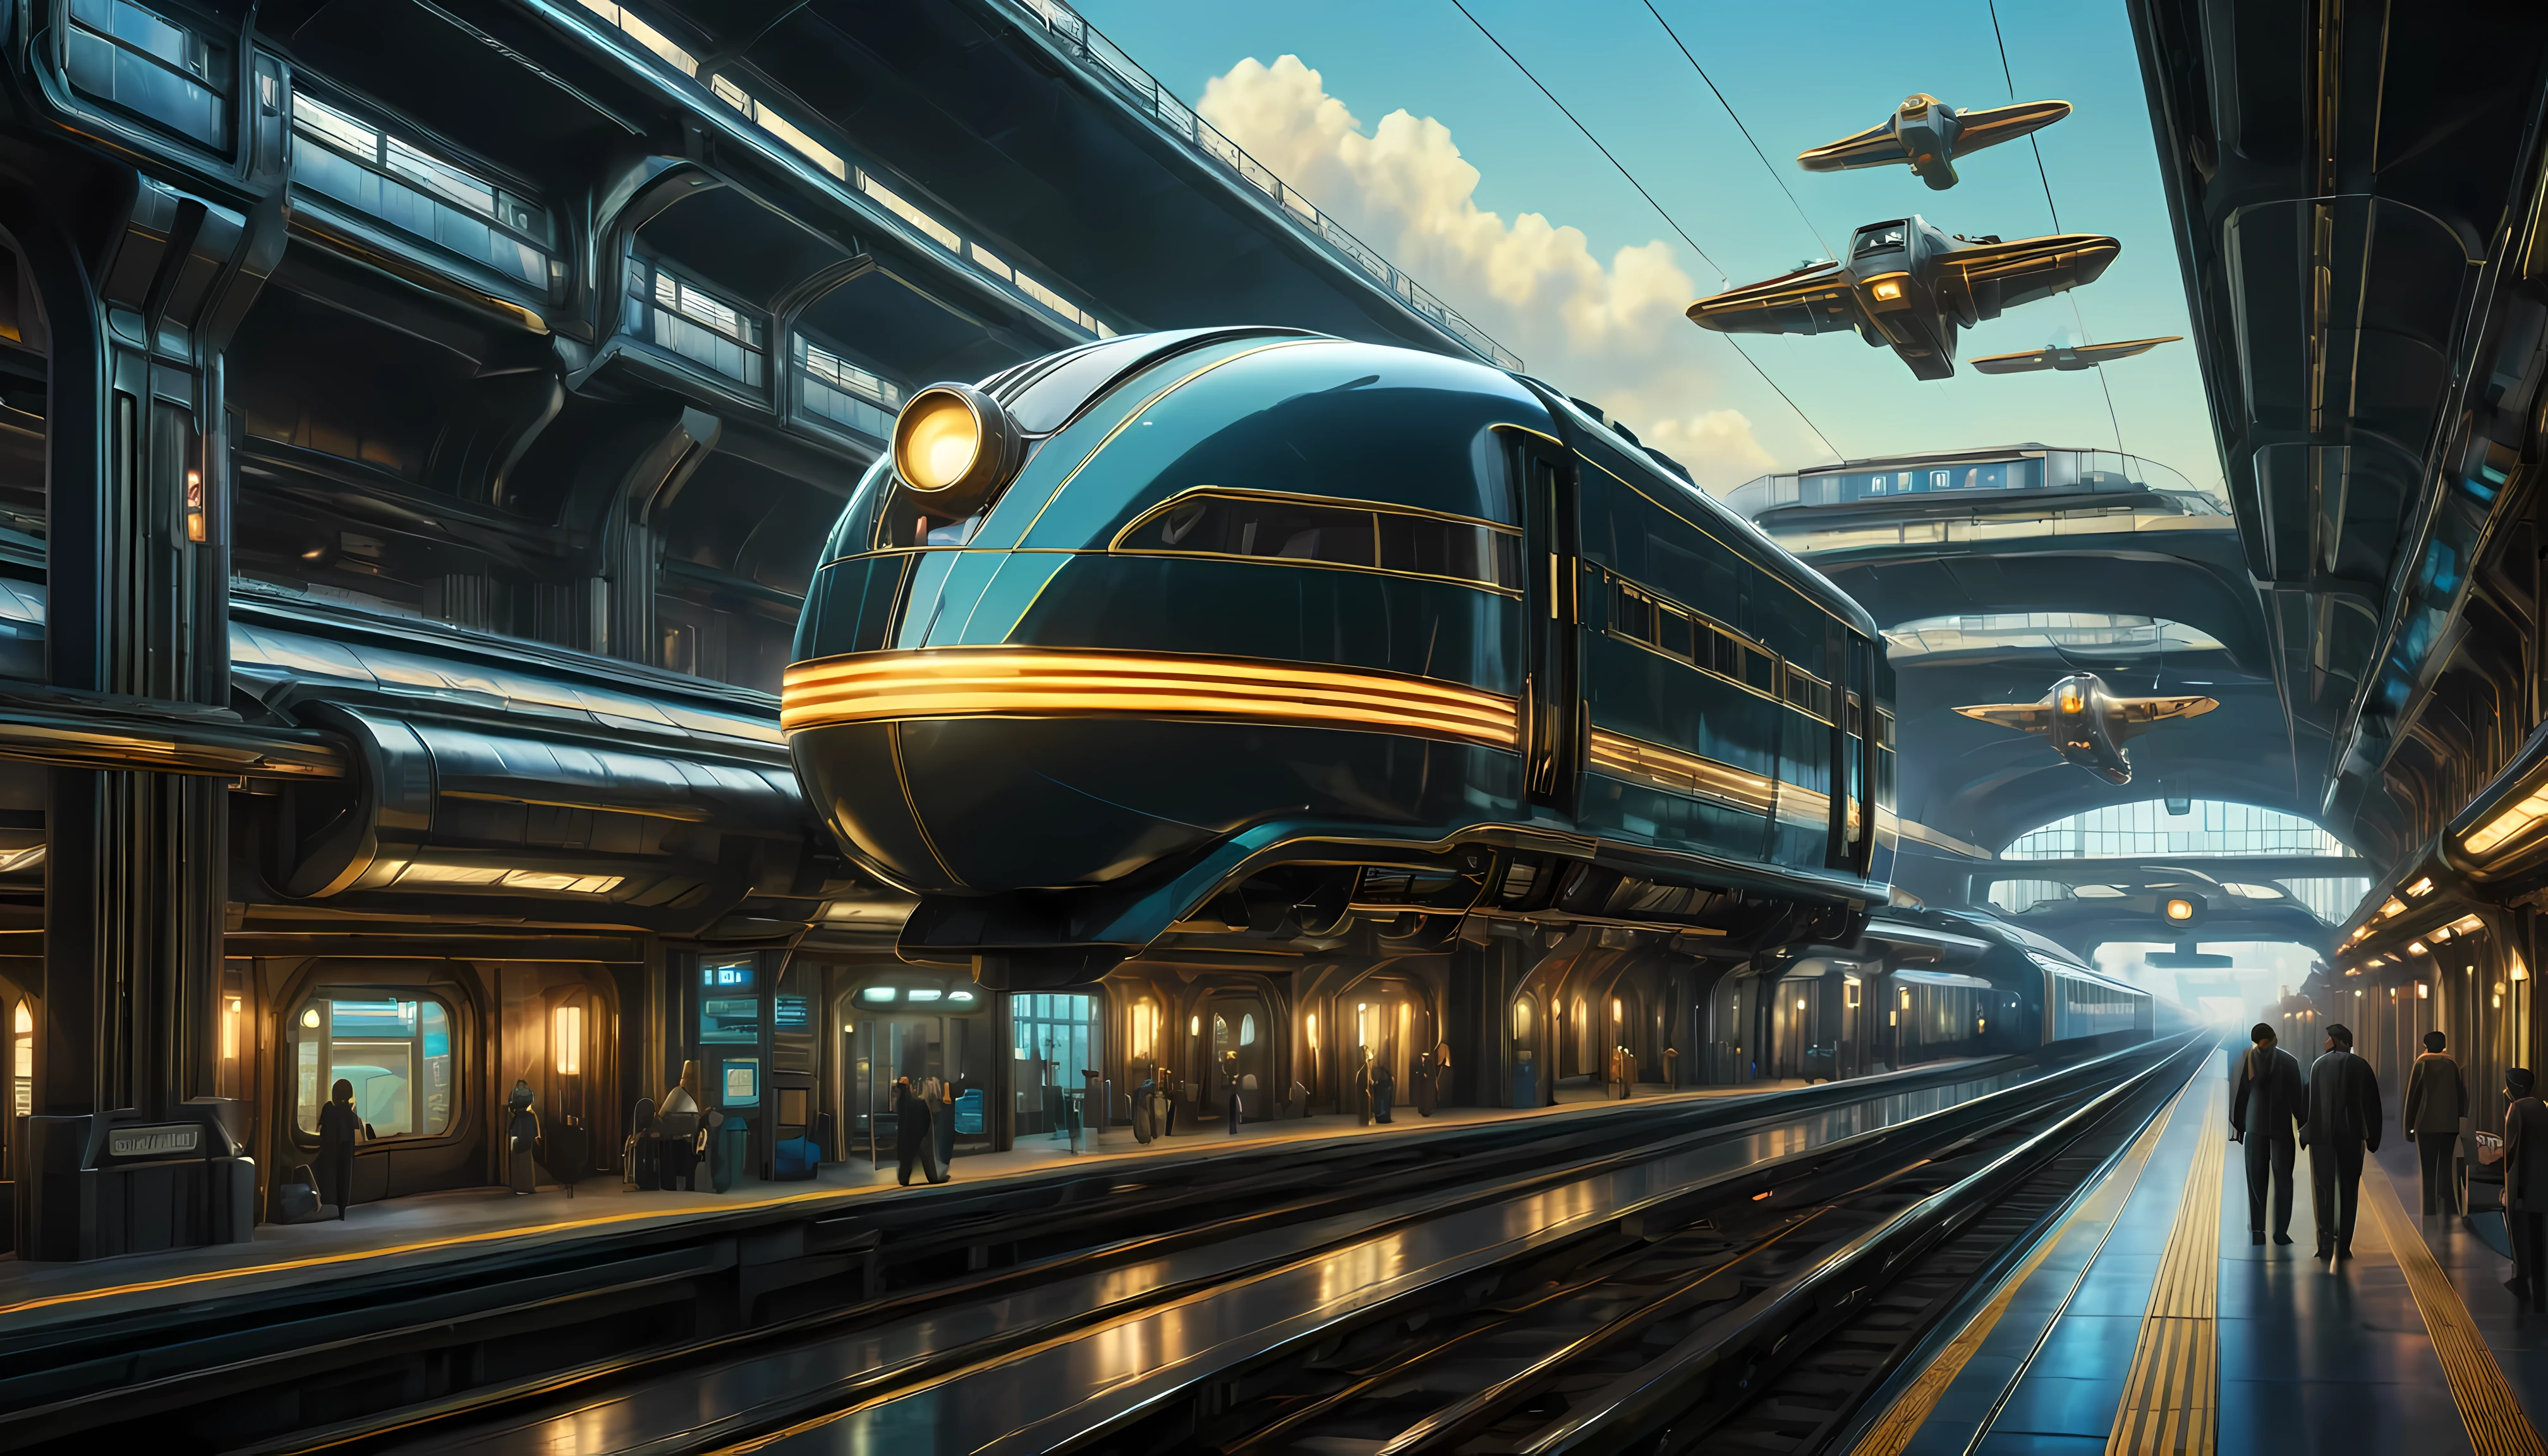 Летающий поезд в стиле арт-деко, научная фантастика в стиле арт-деко, фон — плавучий вокзал.

(Лучшее качество,4k,8К,Высокое разрешение,шедевр:1.2),ультрадетализированный,(реалистичный,photoреалистичный,photo-реалистичный:1.37),HDR,UHD,студийное освещение,сверхтонкая живопись,острый фокус,физически обоснованный рендеринг,очень подробное описание,Профессиональный,яркие цвета,боке.